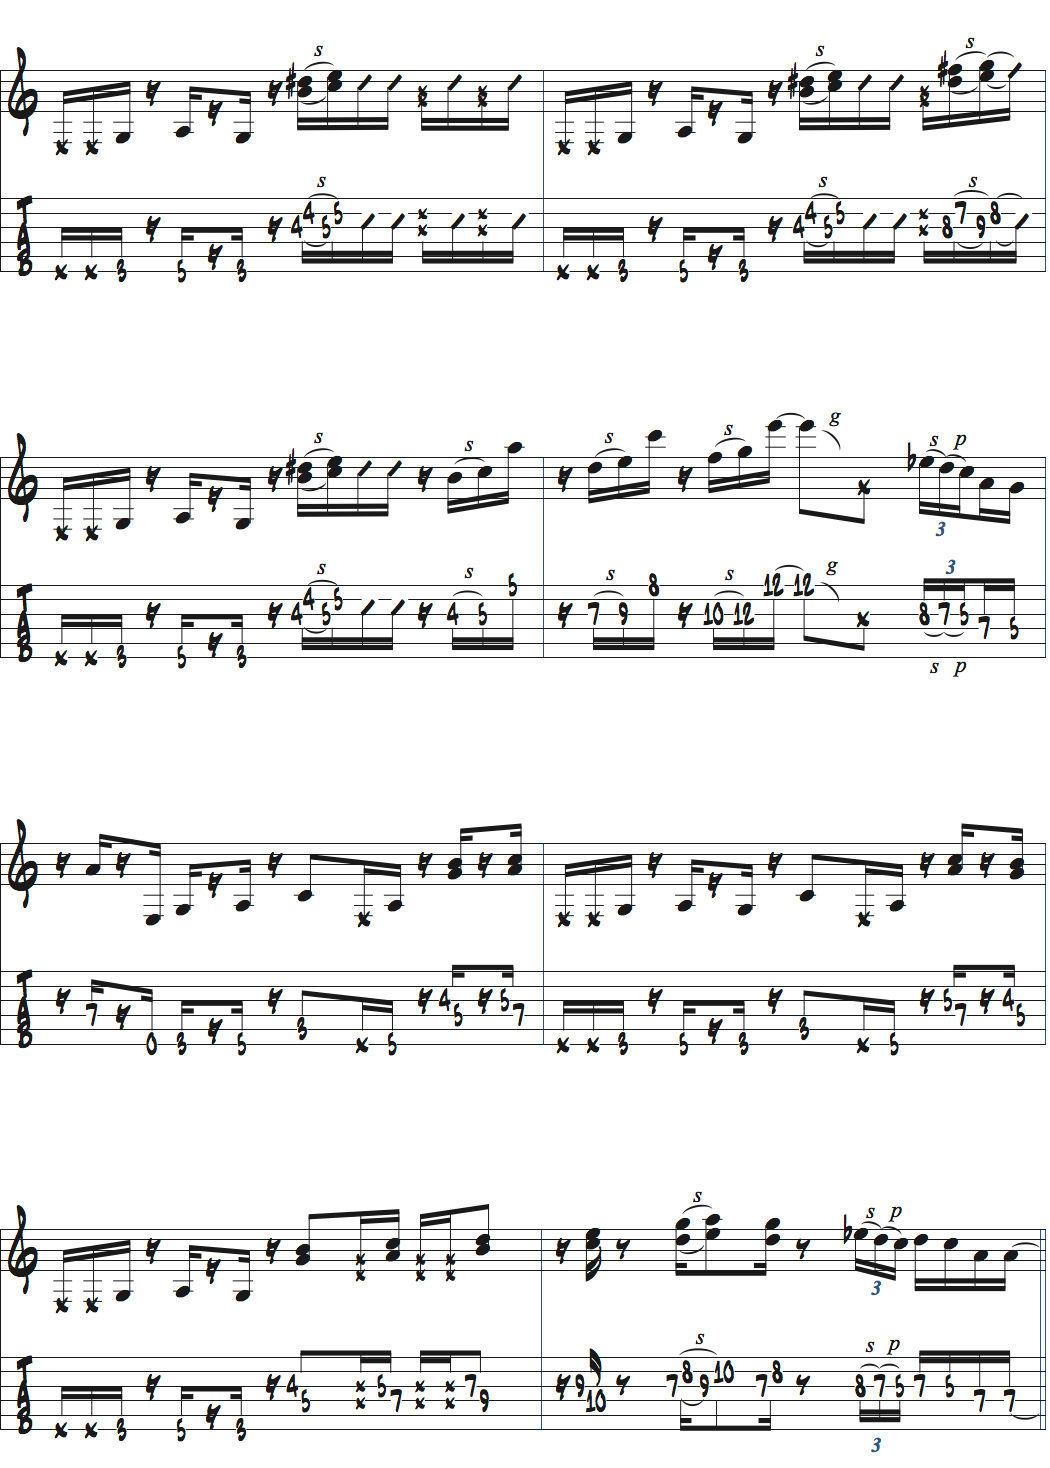 ポールジャクソンジュニアが弾くAm7で6度とオクターブを加えたバッキング例楽譜ページ2